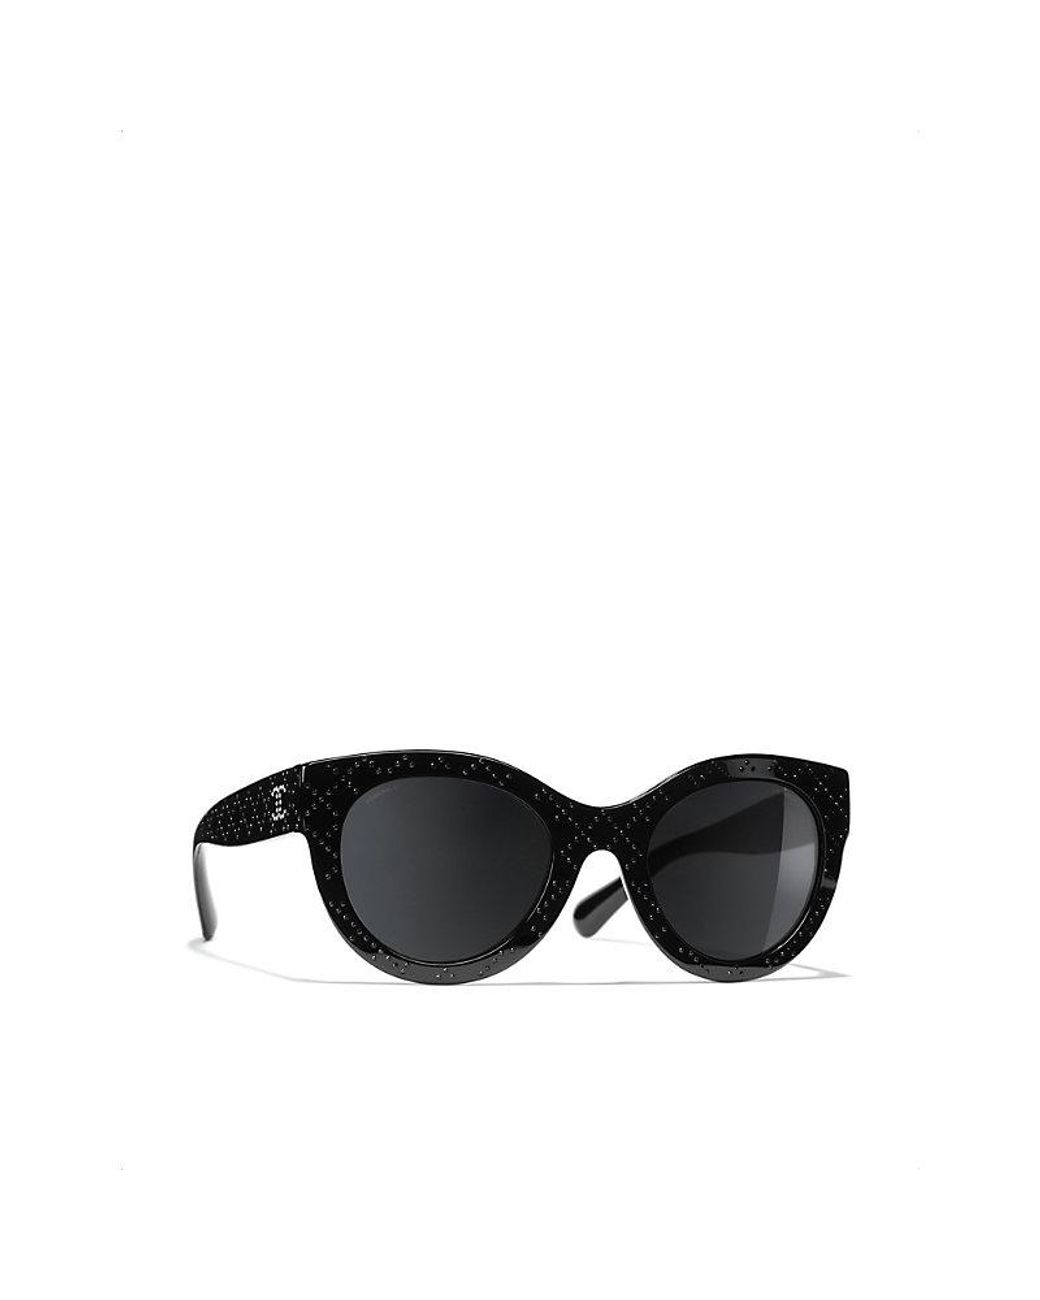 Chanel Butterfly Sunglasses in Black | Lyst UK